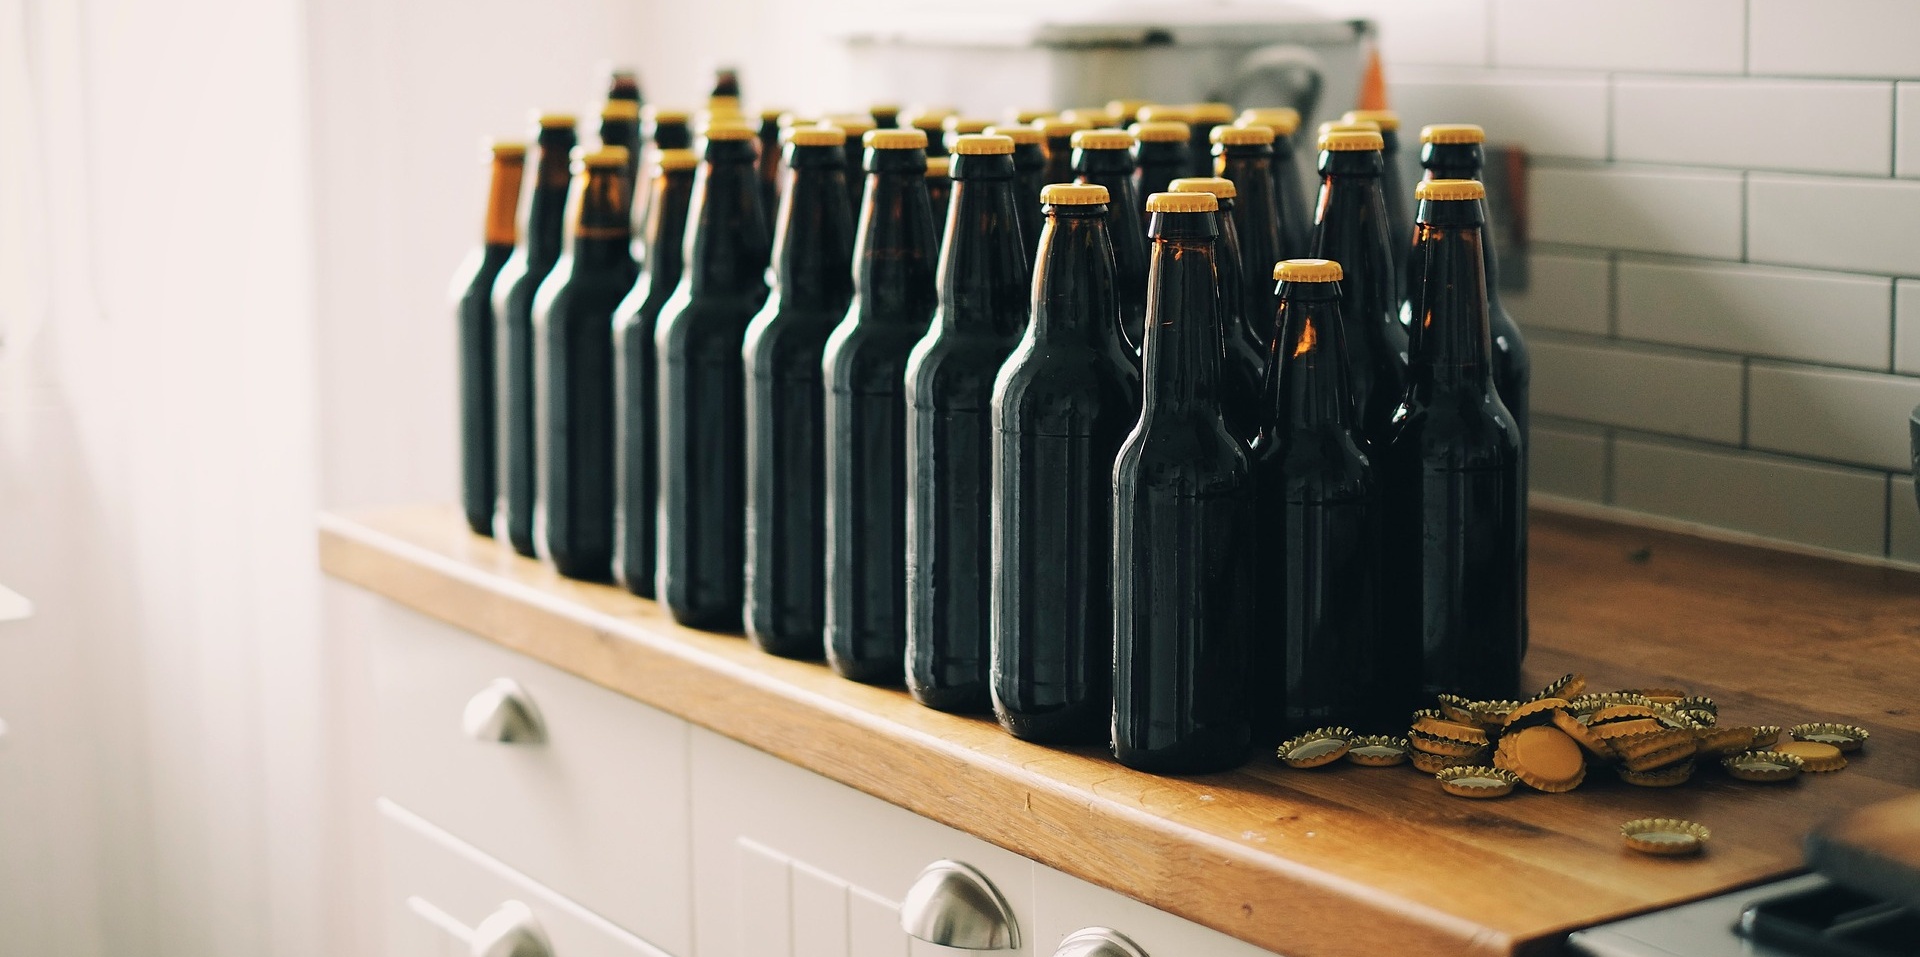 Homebrew bottles in kitchen